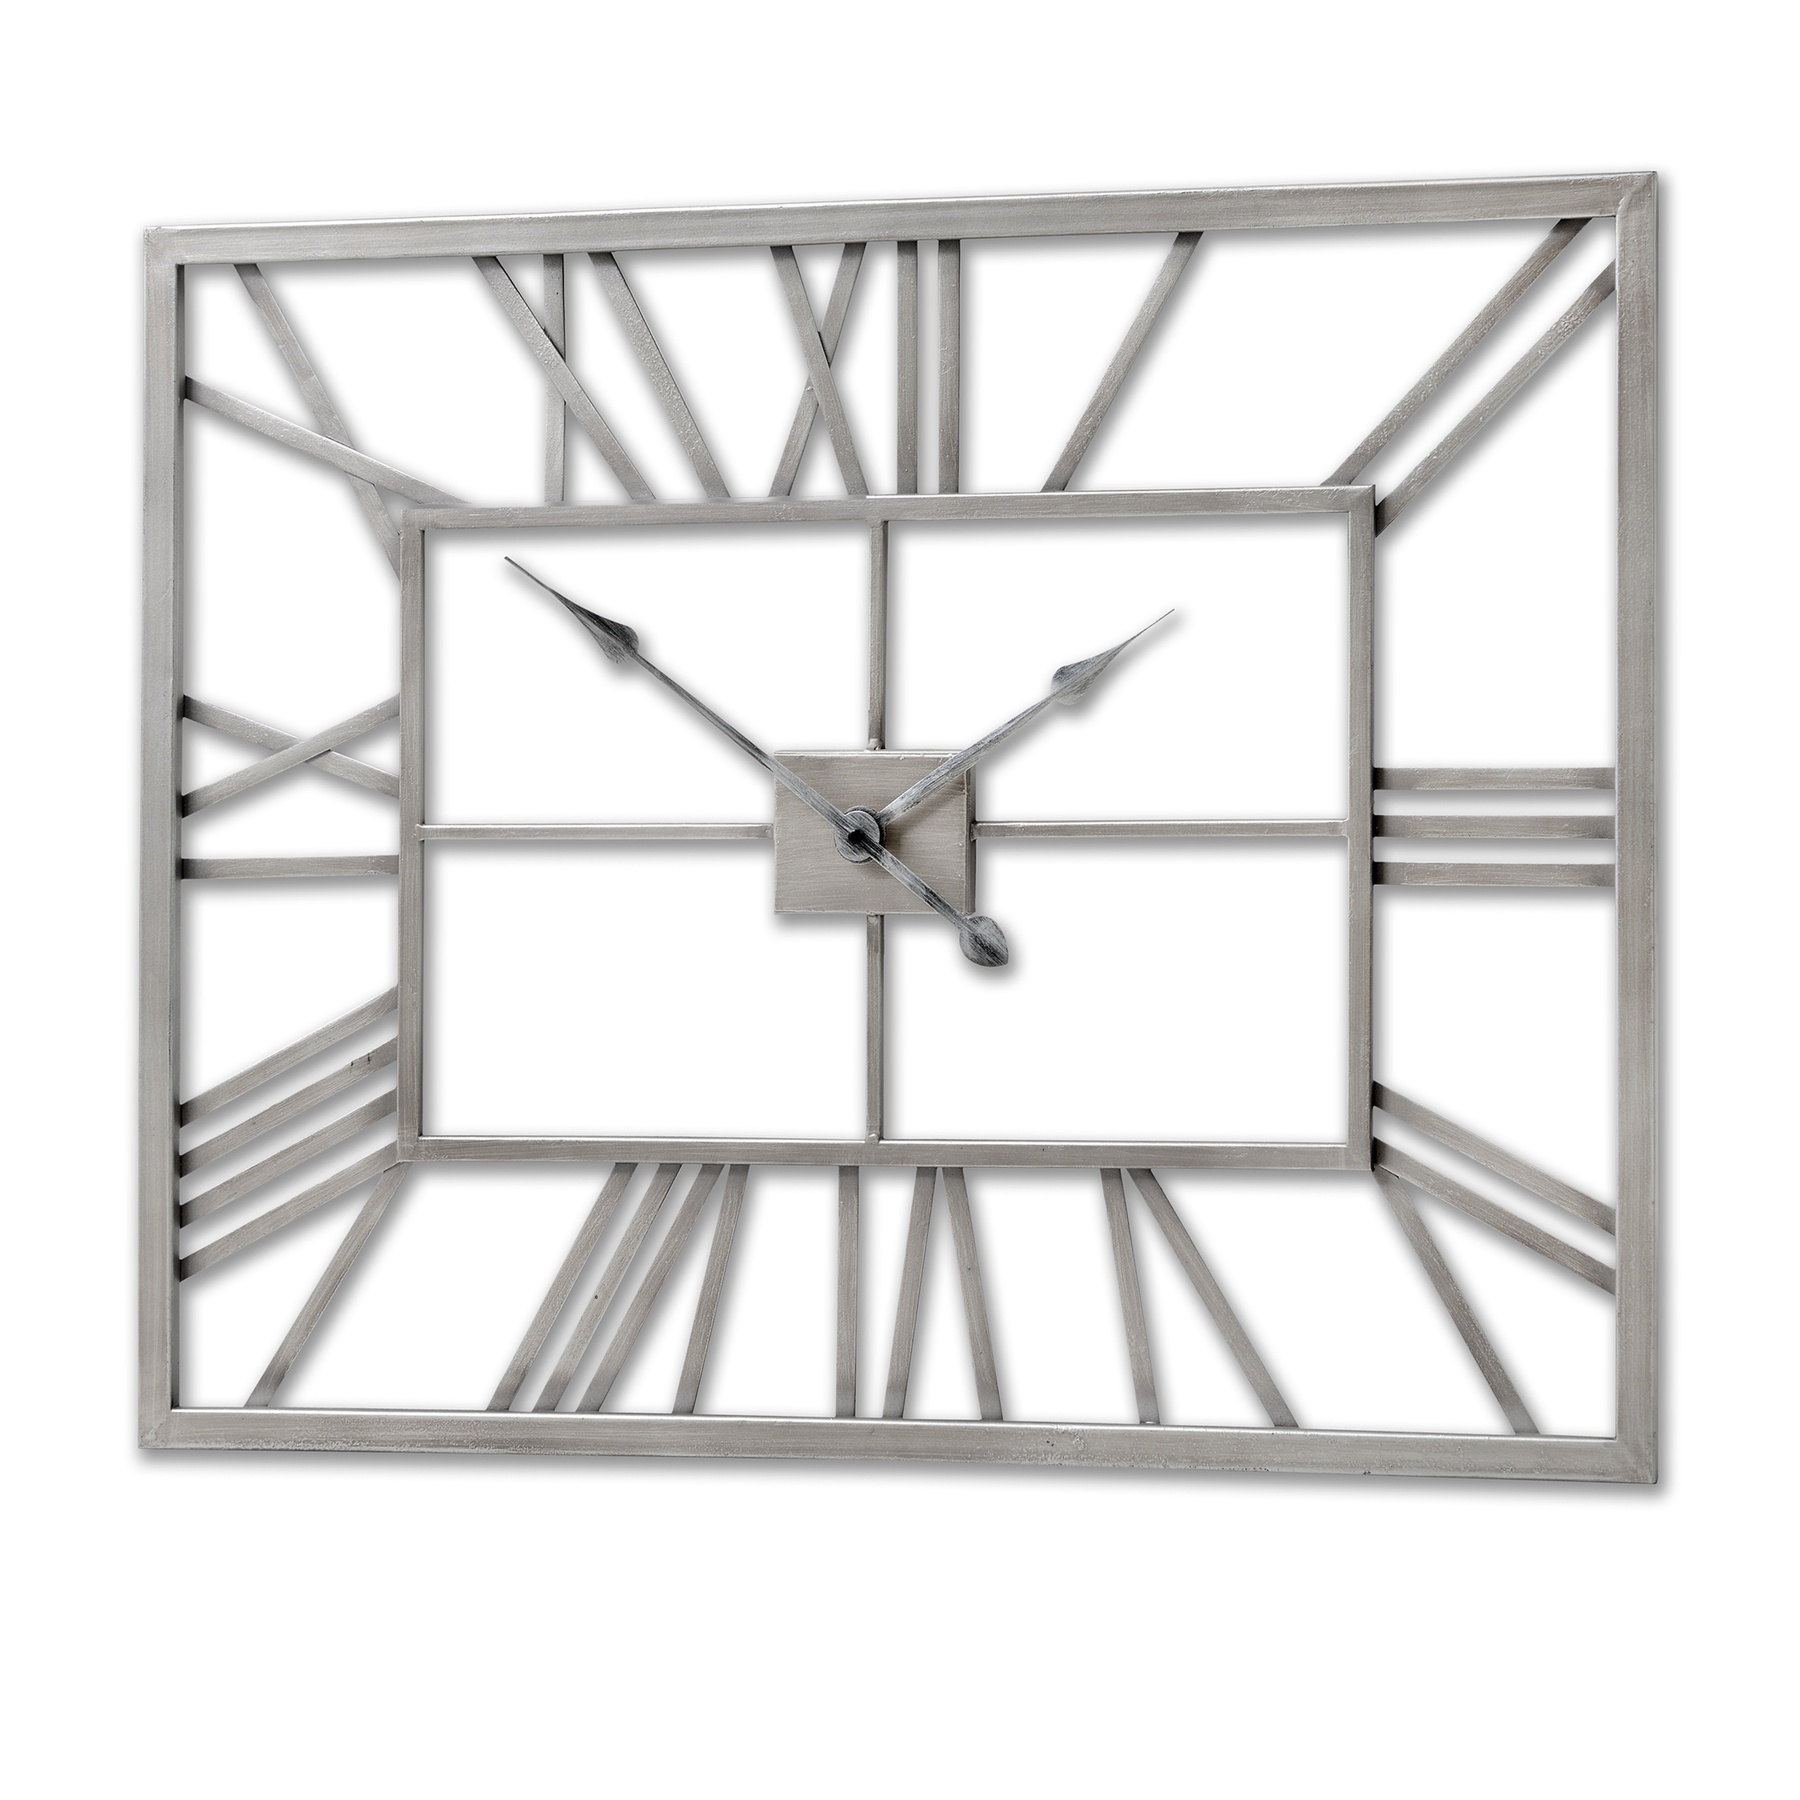 Silver Rectangular Skeleton Wall Clock - Image 1